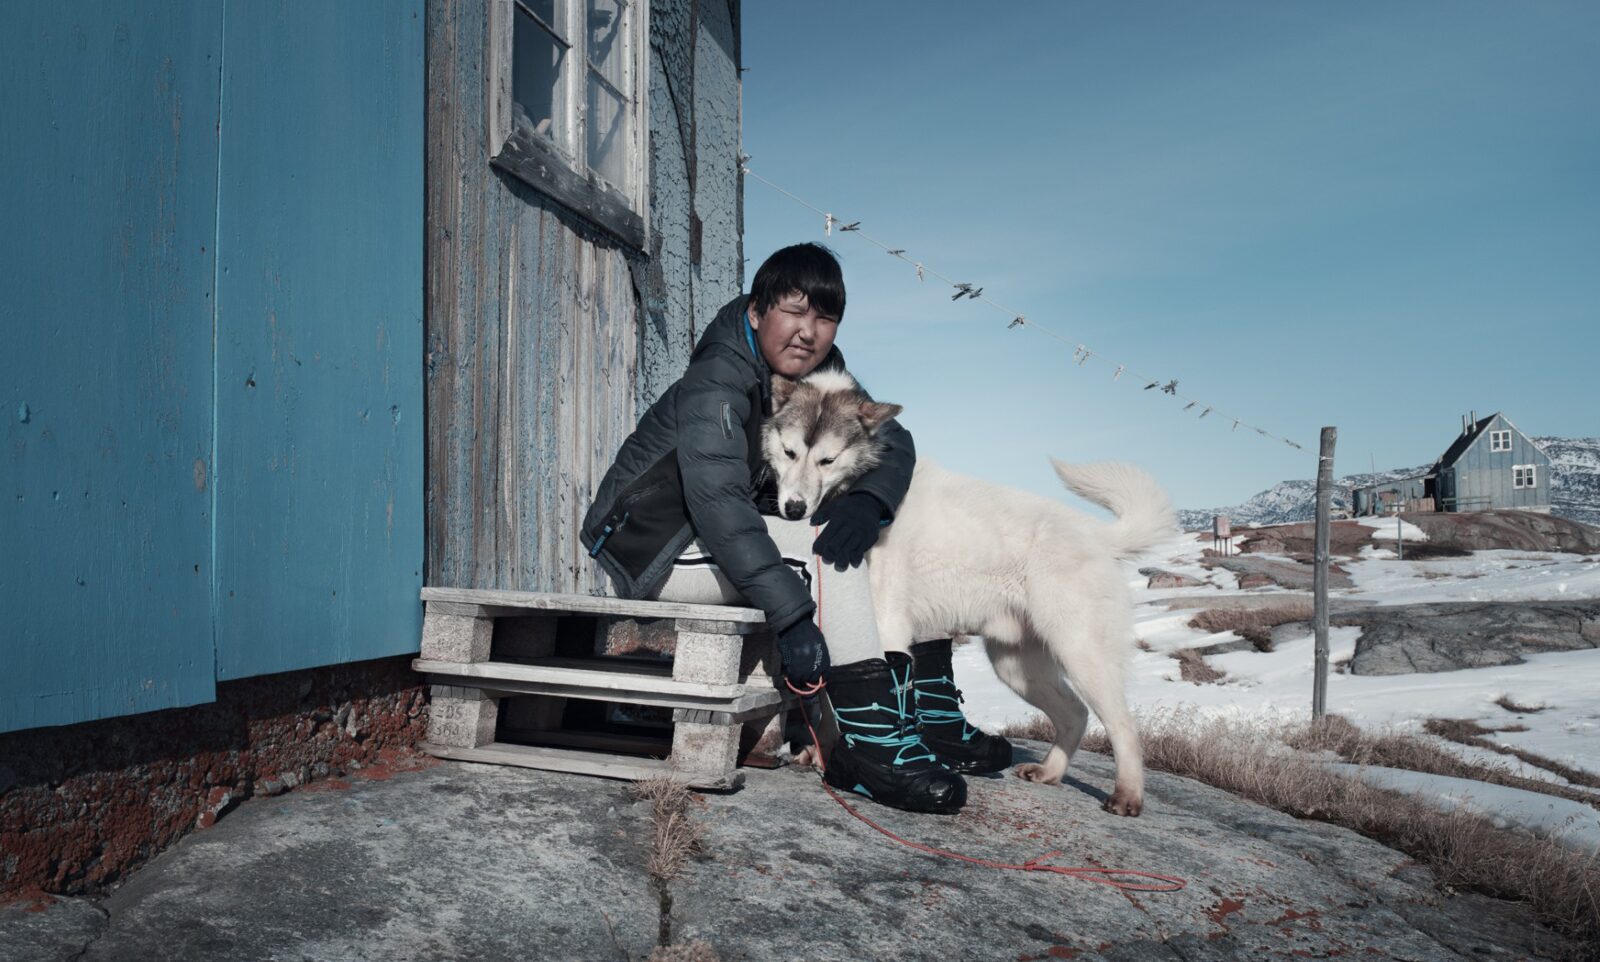 De impact van klimaatverandering: het verhaal van de 10-jarige Malik uit Groenland